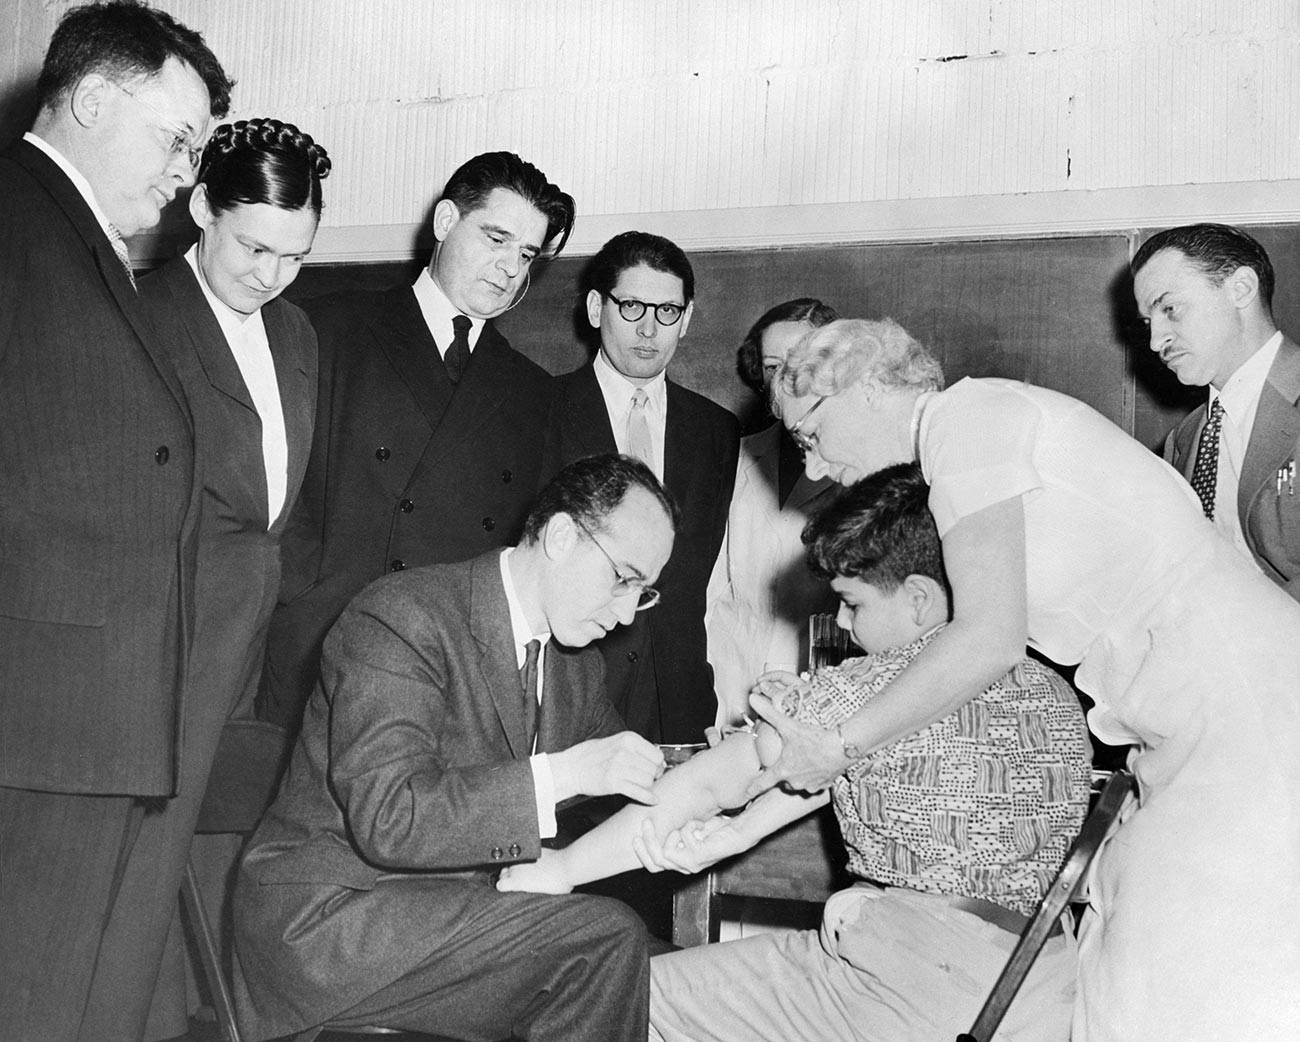 Ilmuwan Rusia yang mengunjungi AS menyaksikan Dr. Jonas Salk memberikan suntikan vaksin antipolio kepada kepada seorang anak.